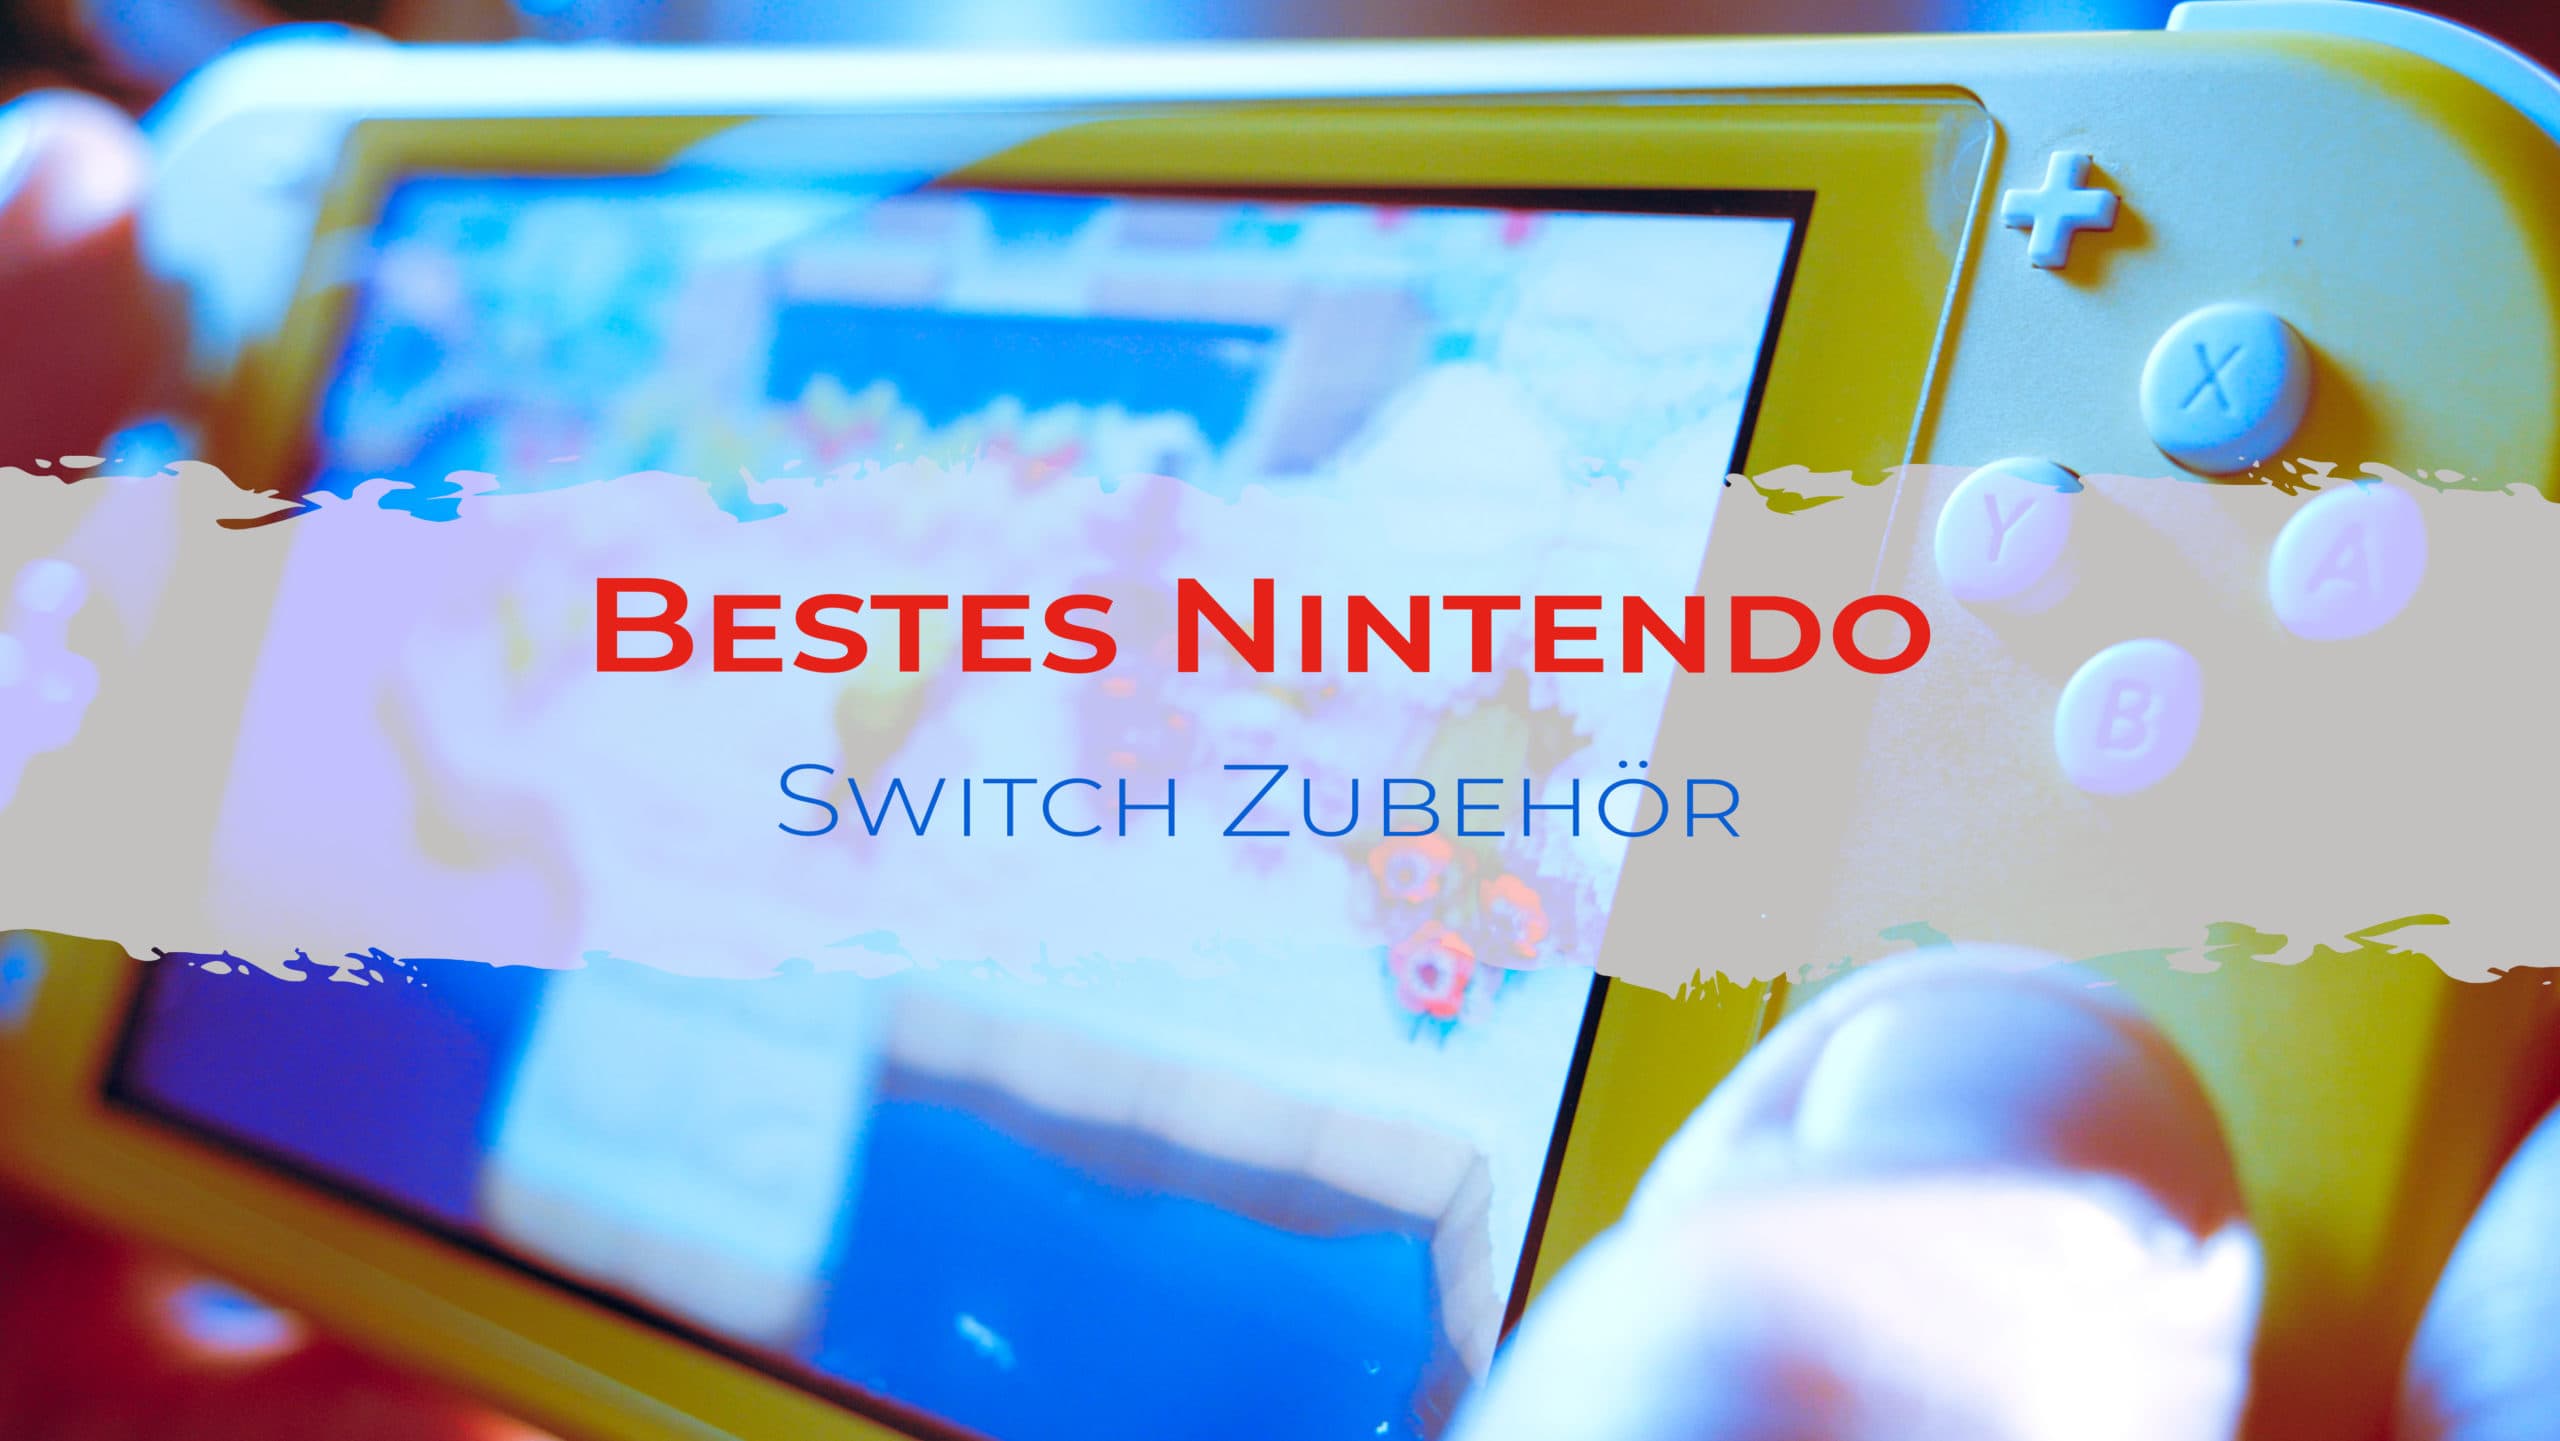 Bestes Nintendo Switch Zubehör